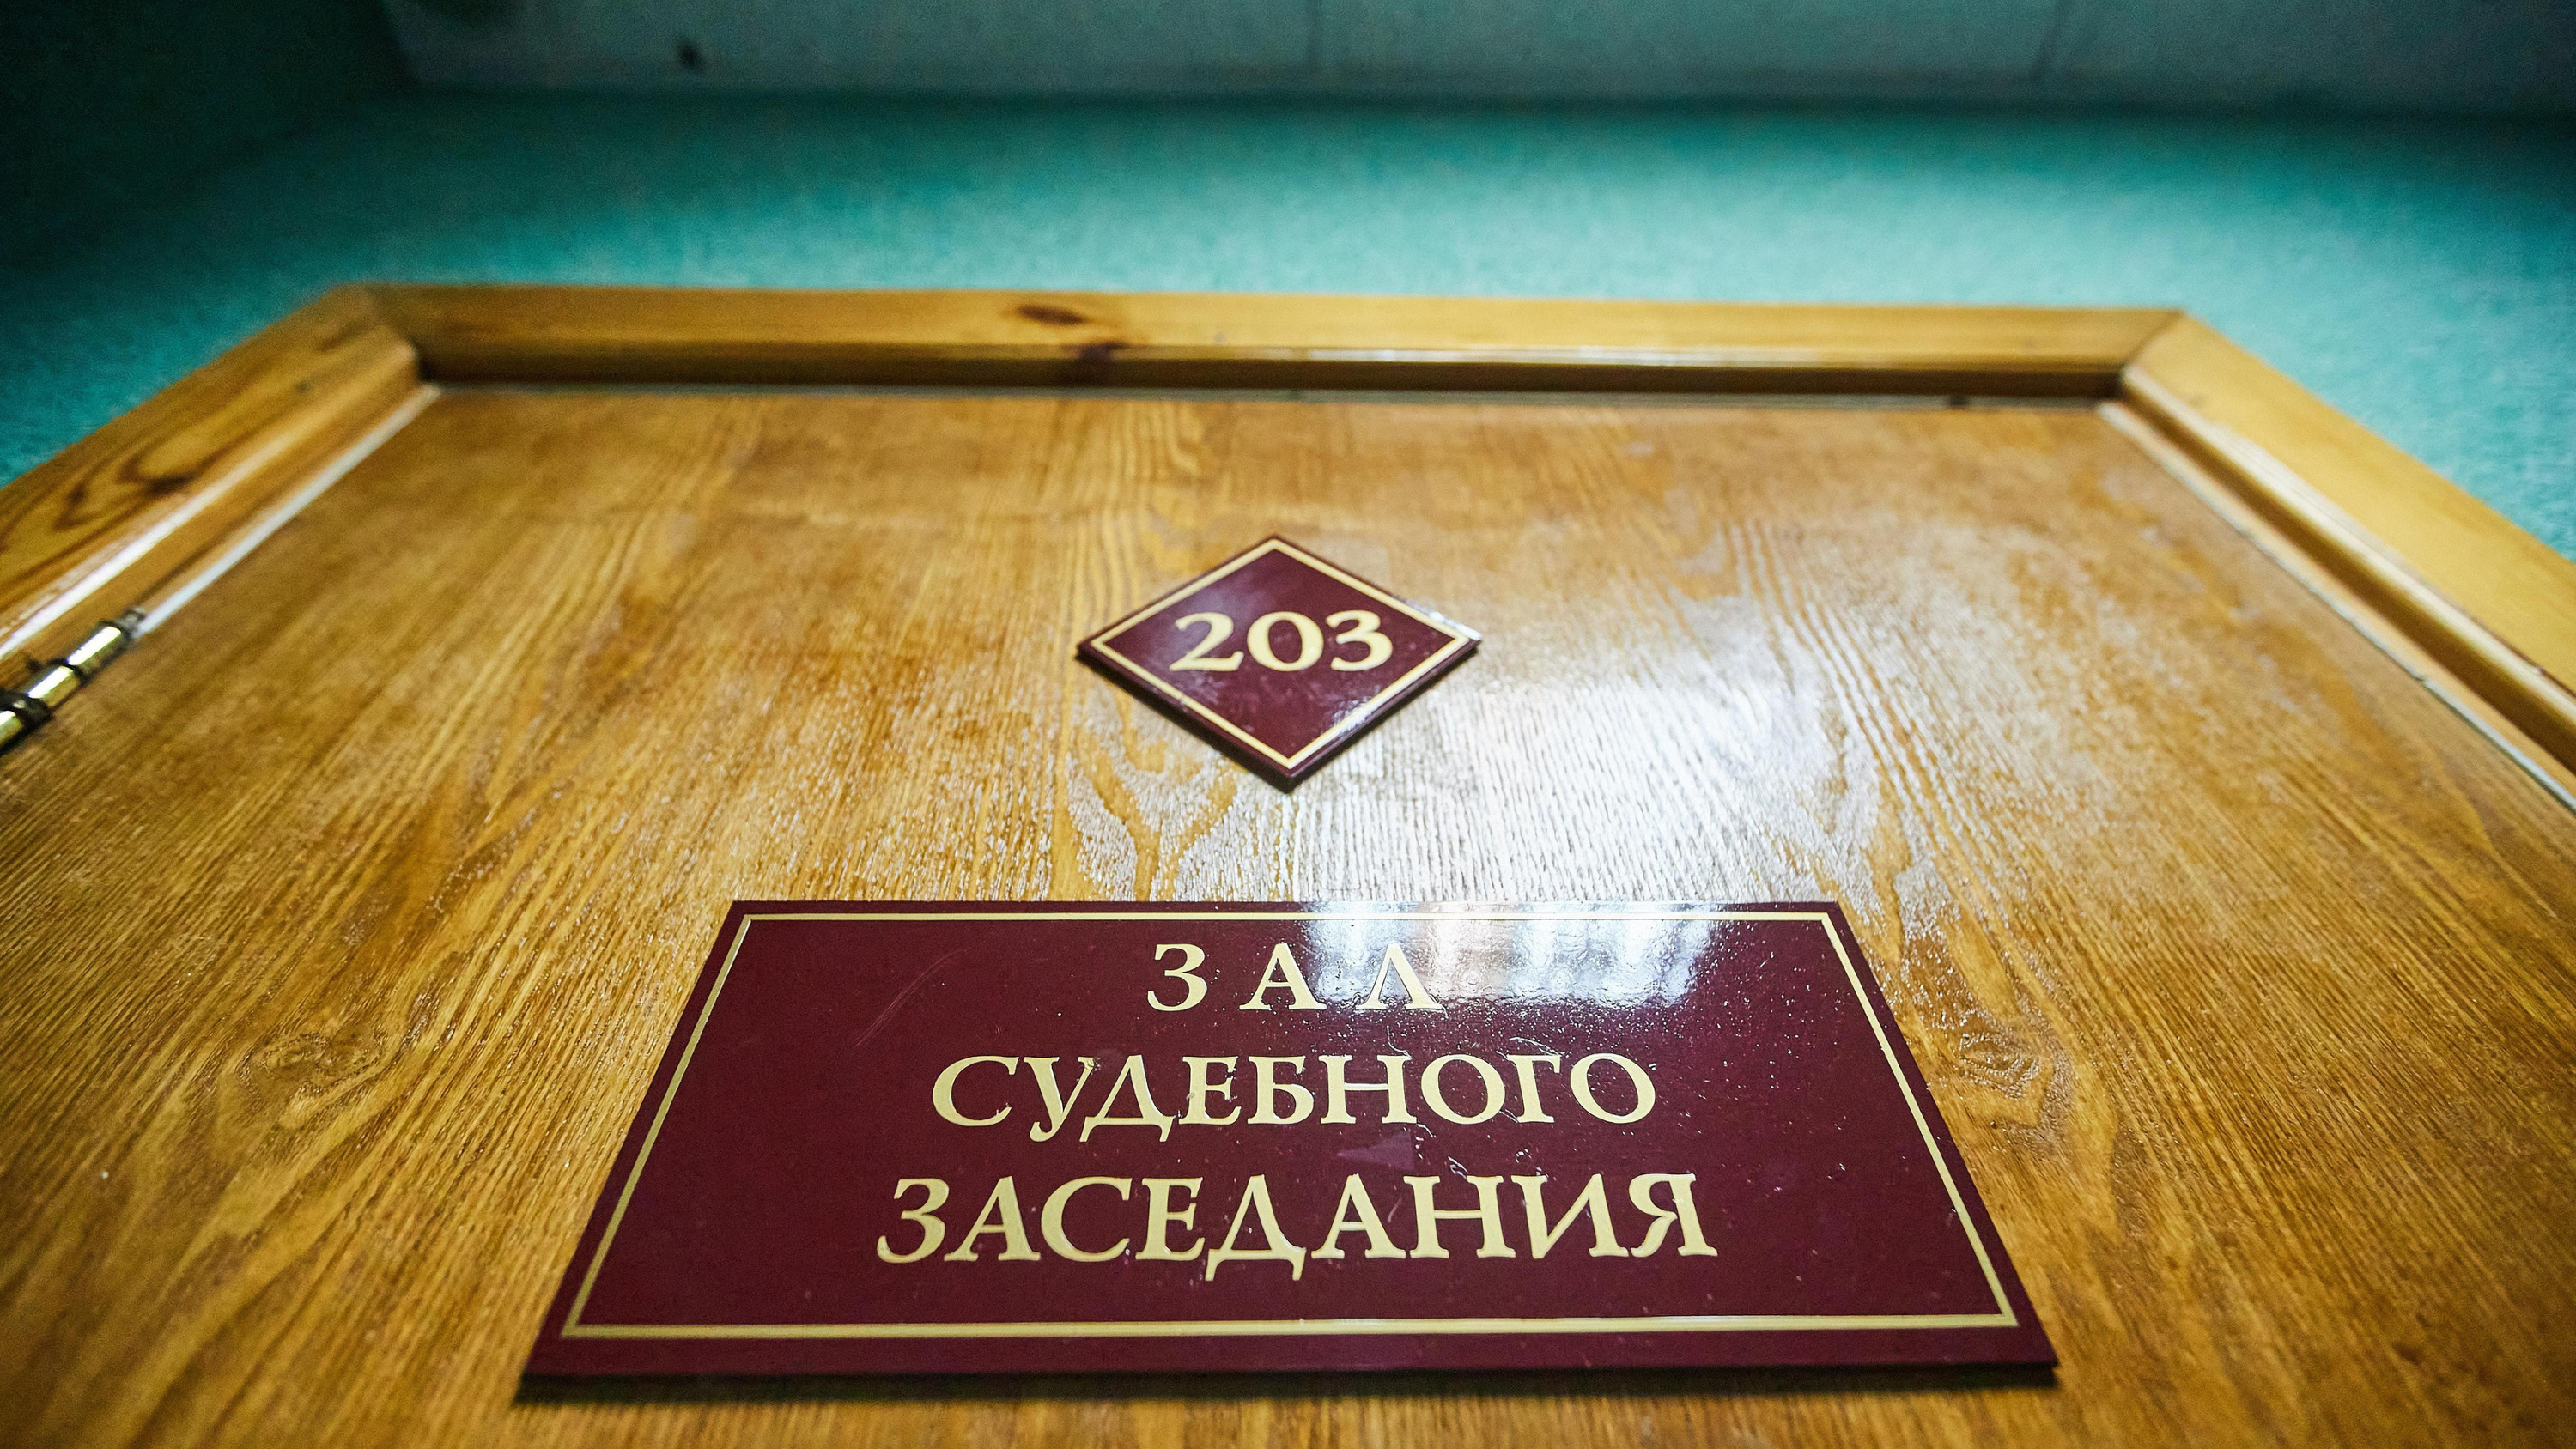 Зачет за деньги: в Новосибирске за взятки осудили экс-преподавателя физкультуры филиала РАНХиГС